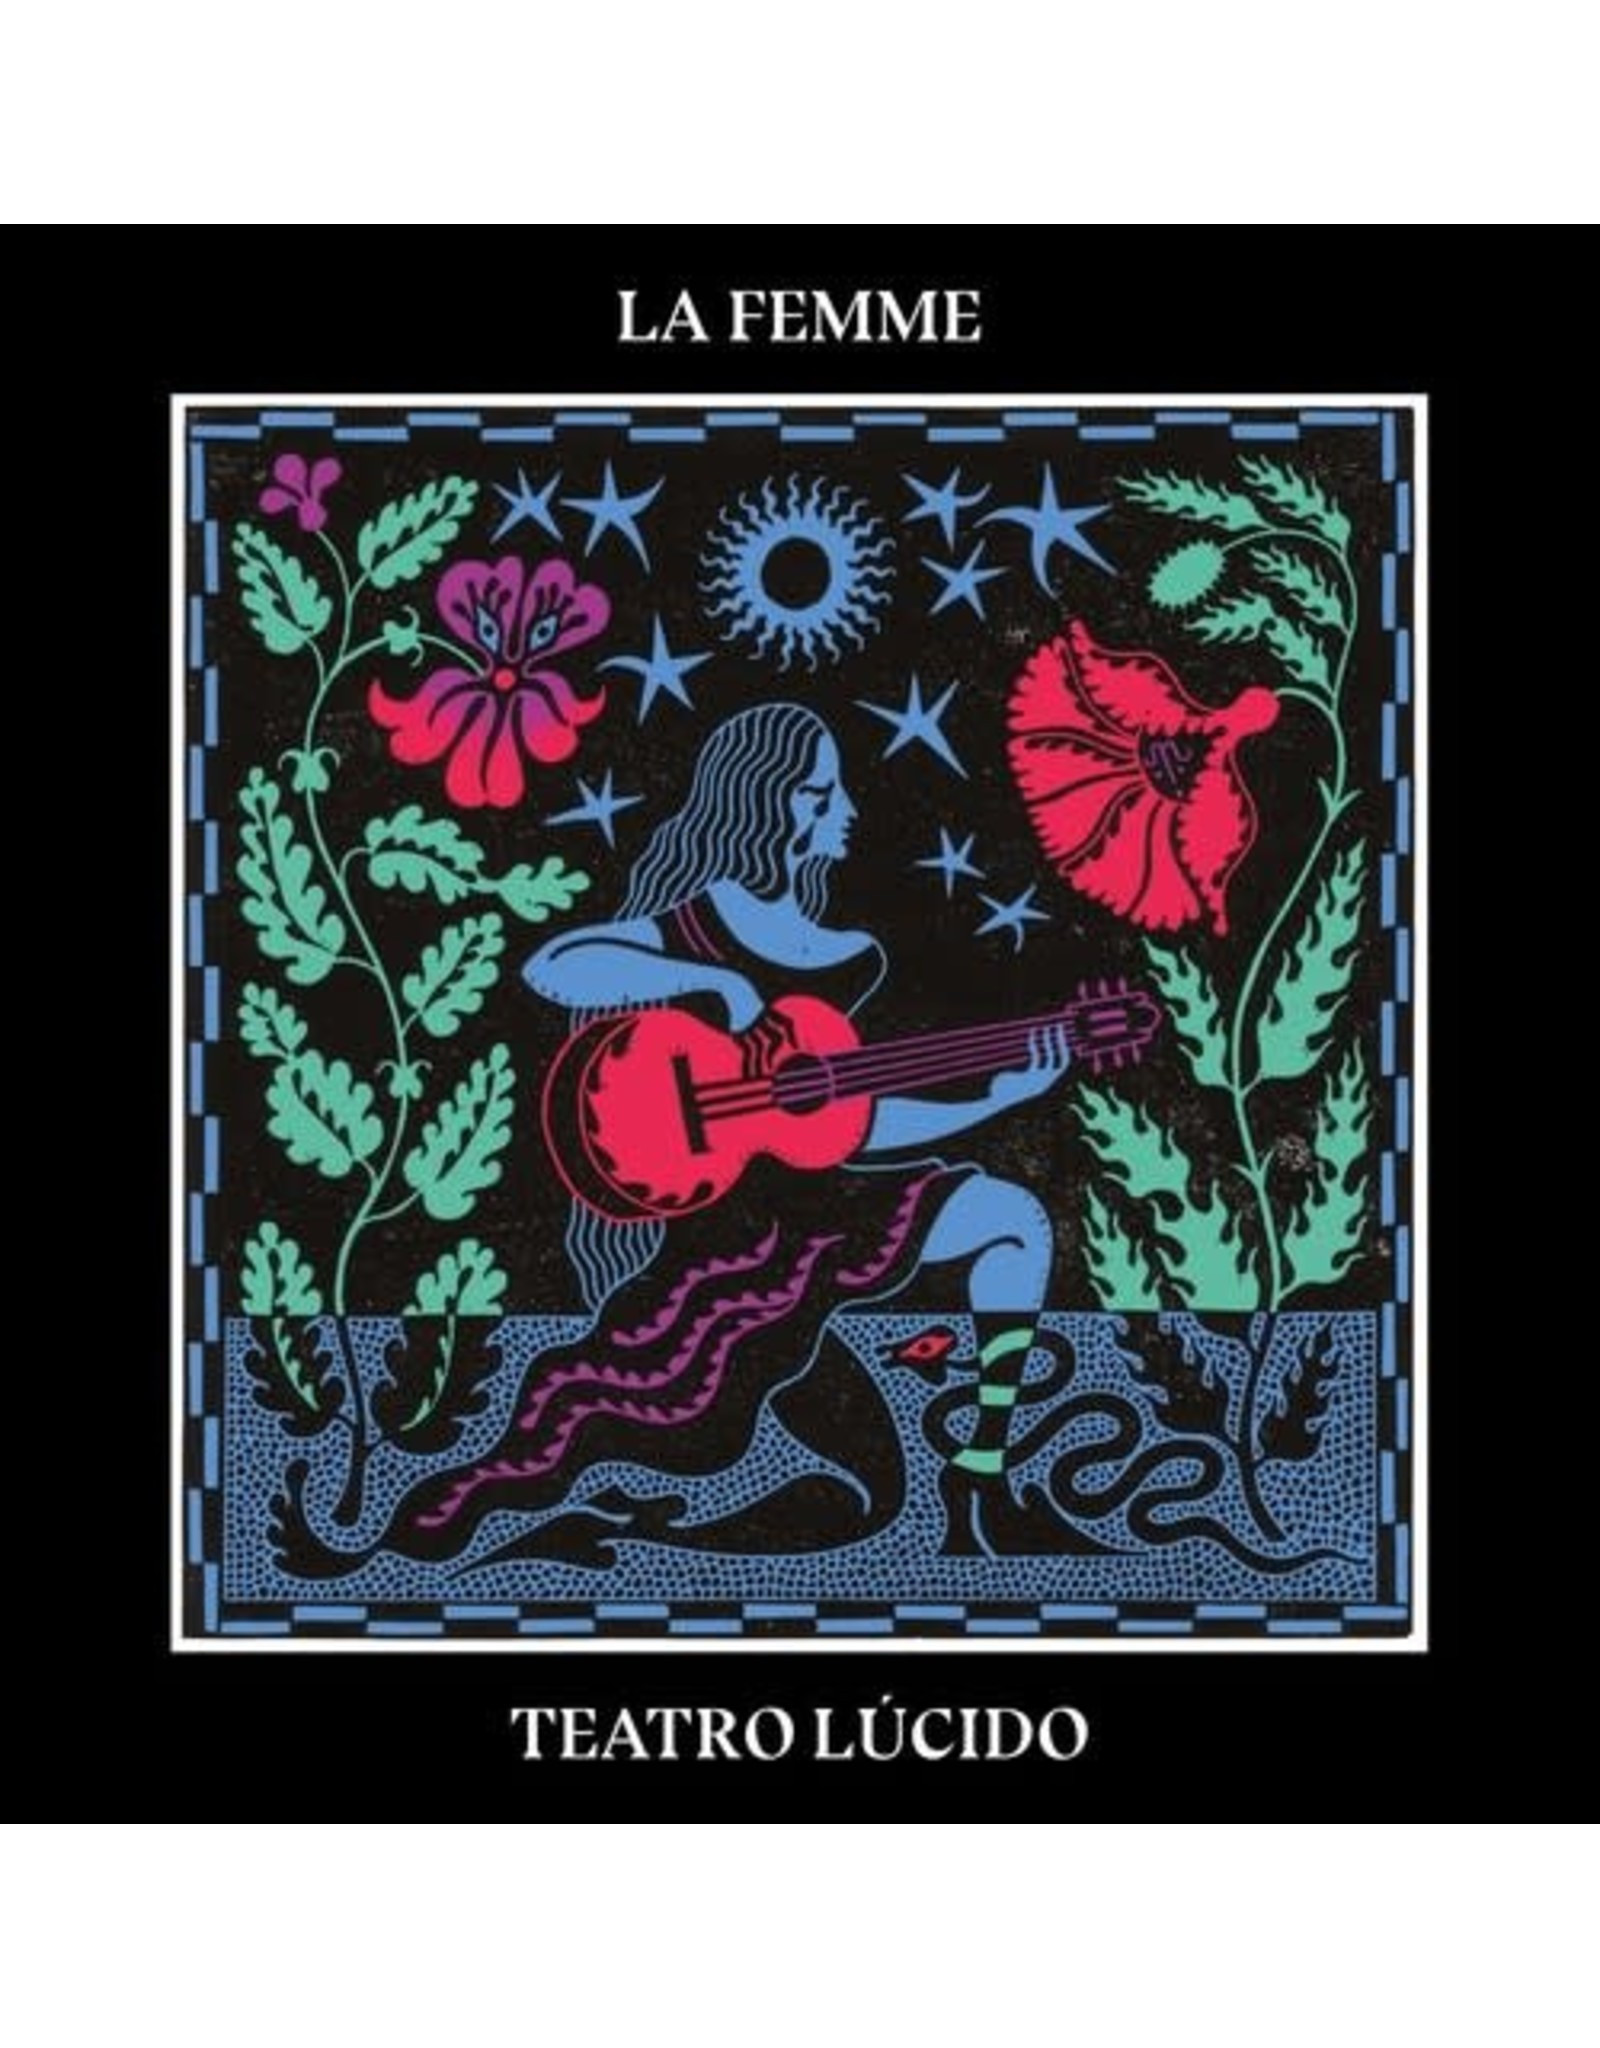 New Vinyl La Femme - Teatro Lucido LP